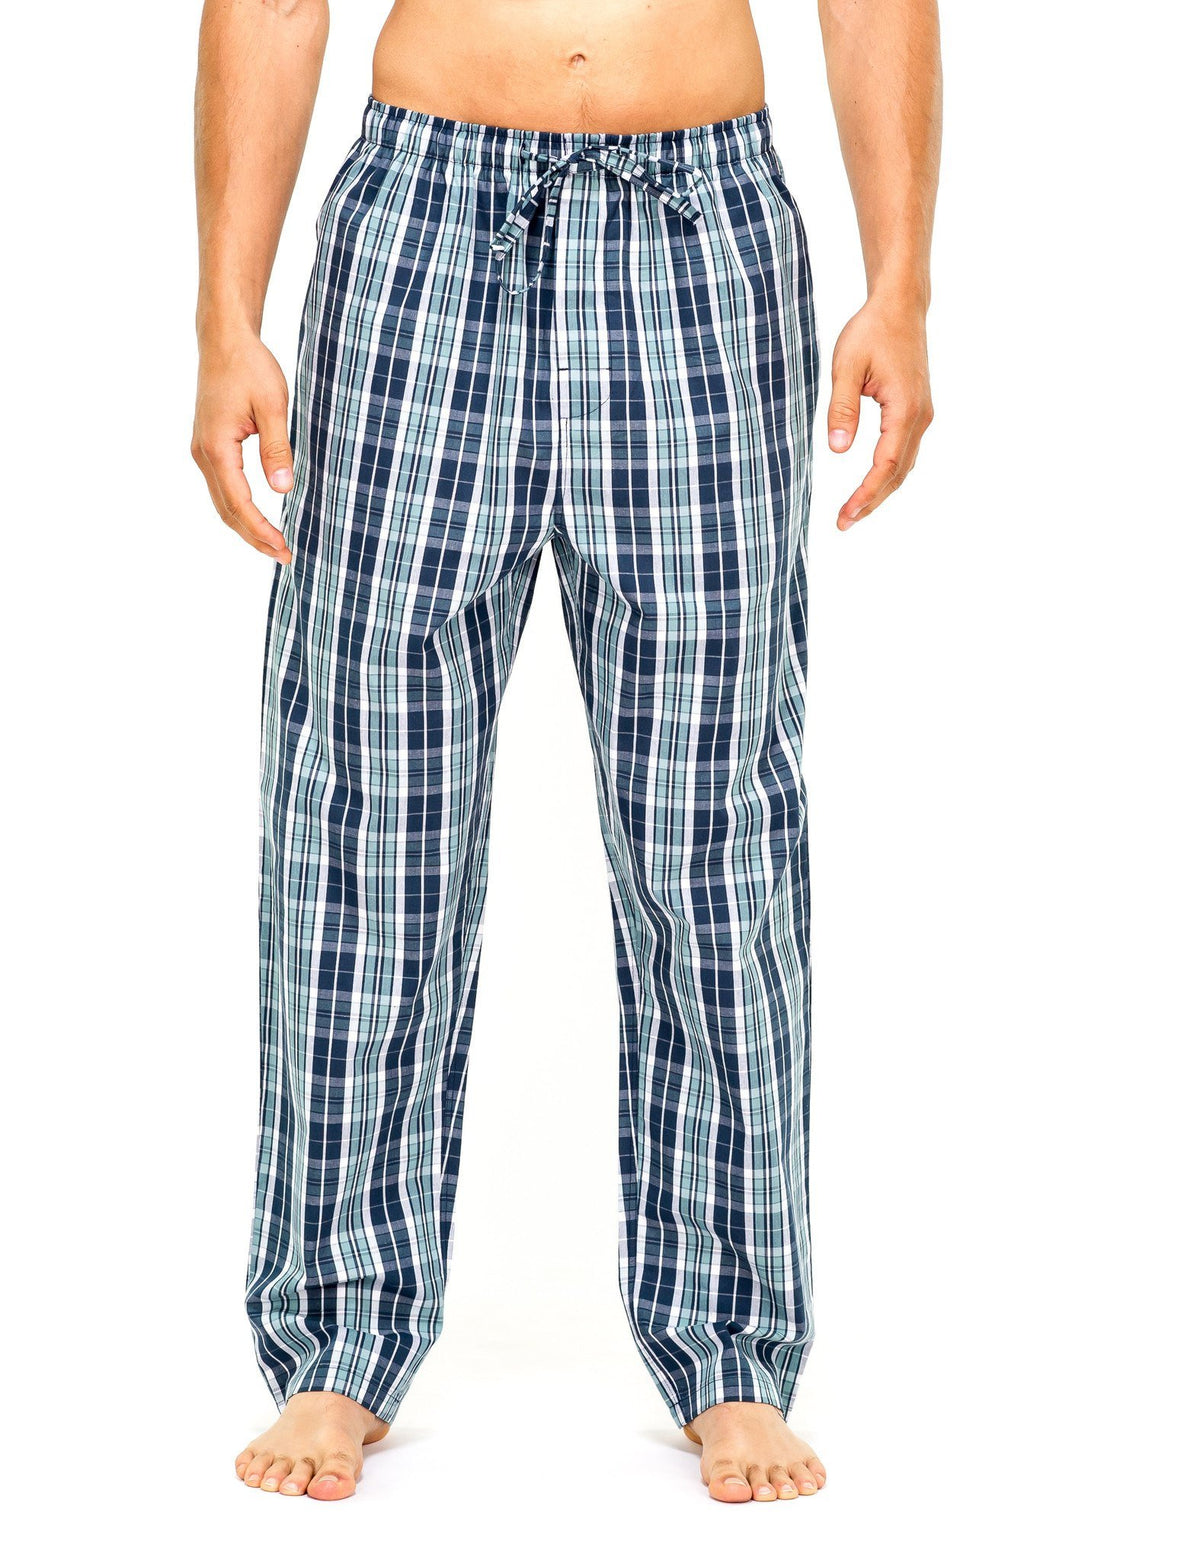 Men's 100% Cotton Comfort-Fit Sleep/Lounge Pants - Navy-Blue Plaid